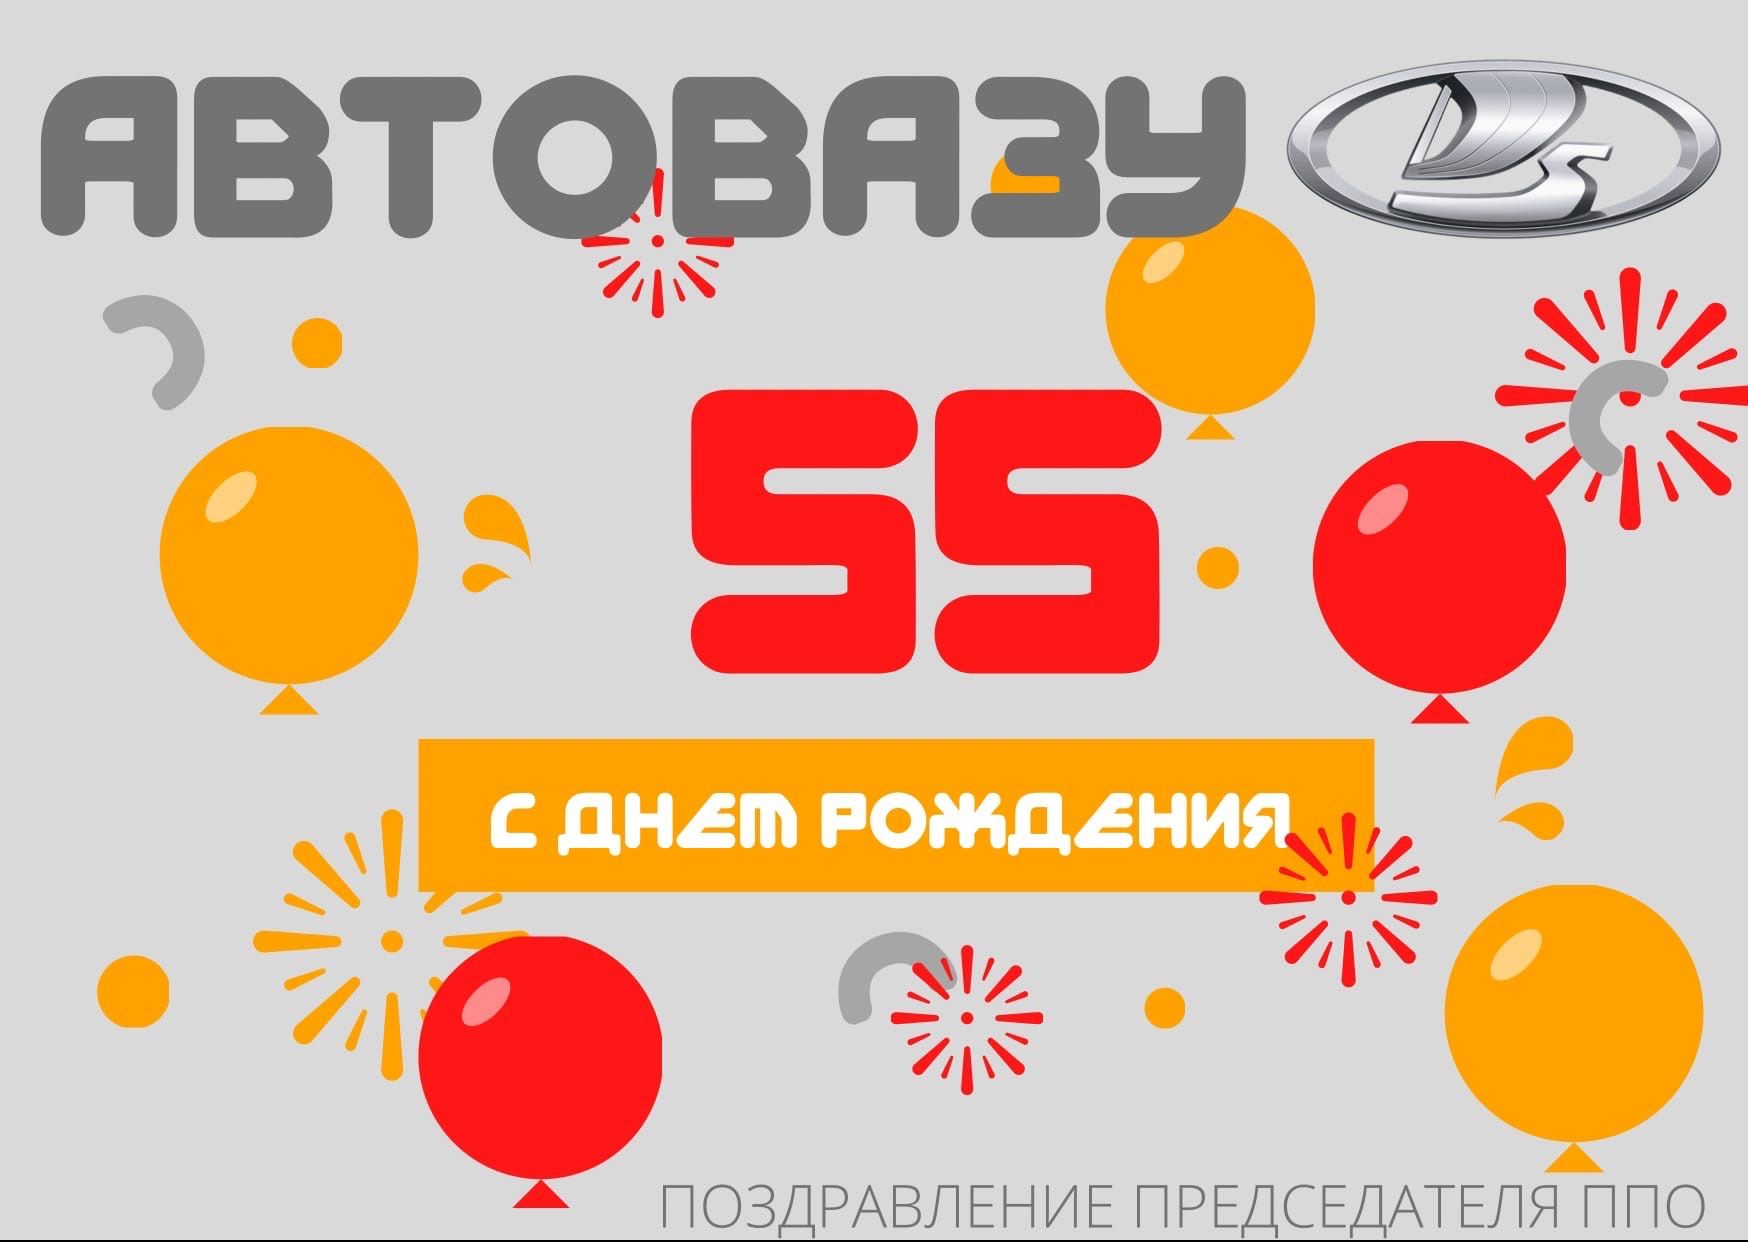 Сегодня исполняется 55 лет постановлению о строительстве ВАЗа в Тольятти